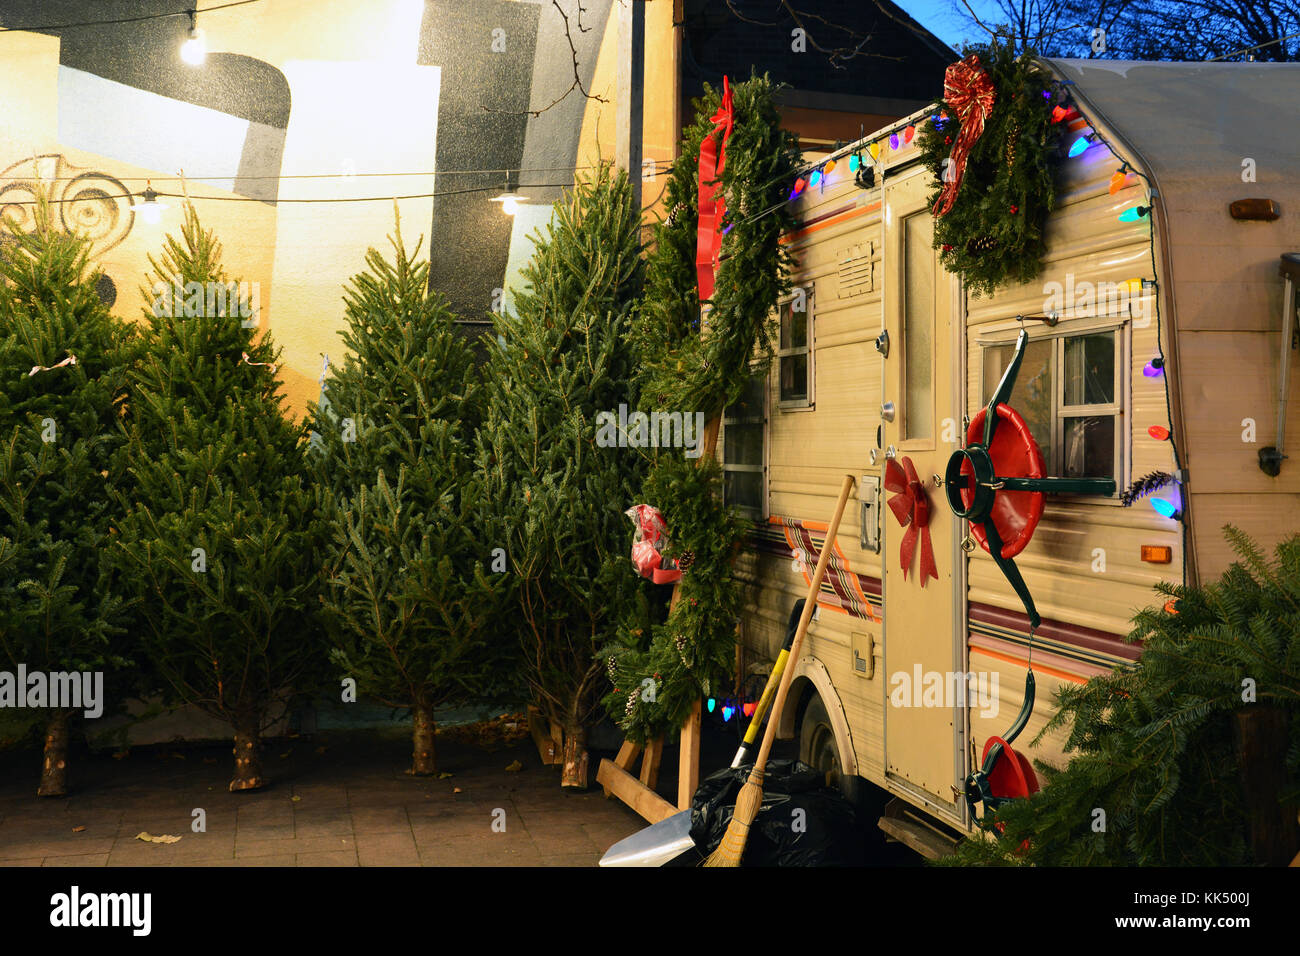 Der Lincoln Square kleinen Nachbarschaft Weihnachtsbaum viele hat, die Bewohner der nördlichen Seite Chicago Nachbarschaft für viele Jahre. Stockfoto